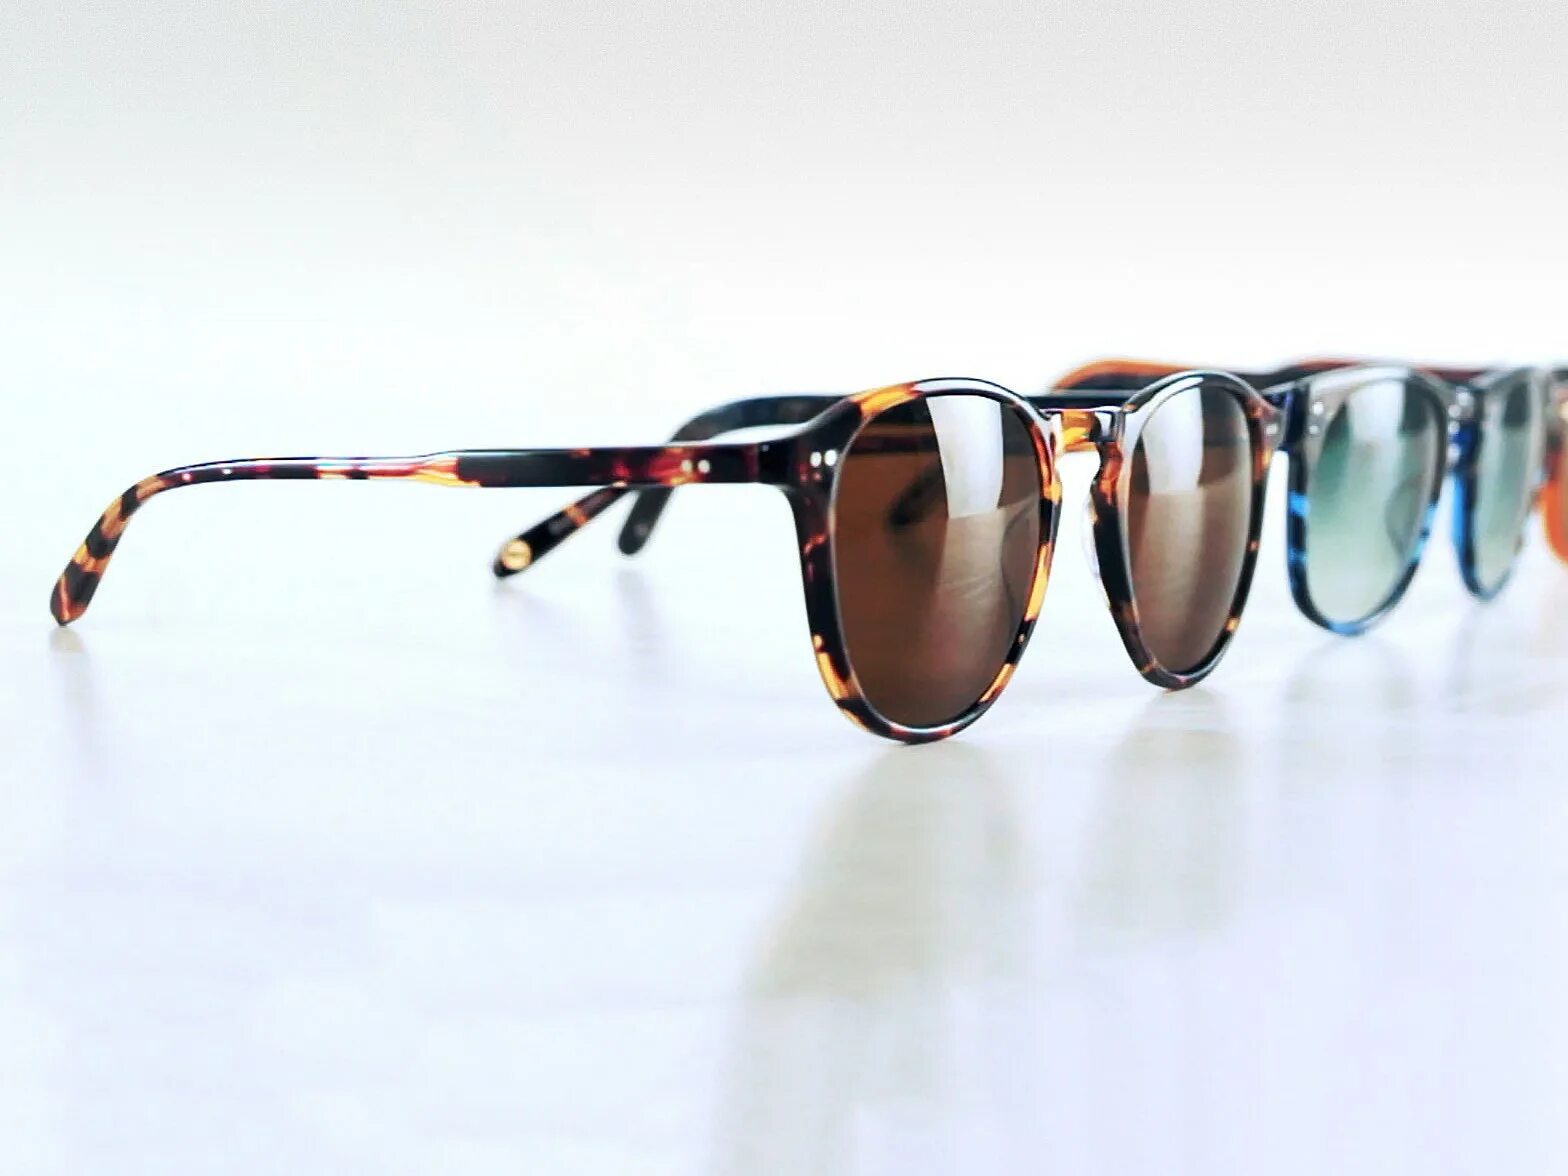 Очки. Солнечные очки. Реклама солнцезащитных очков. Солнцезащитные очки реклама. These sunglasses